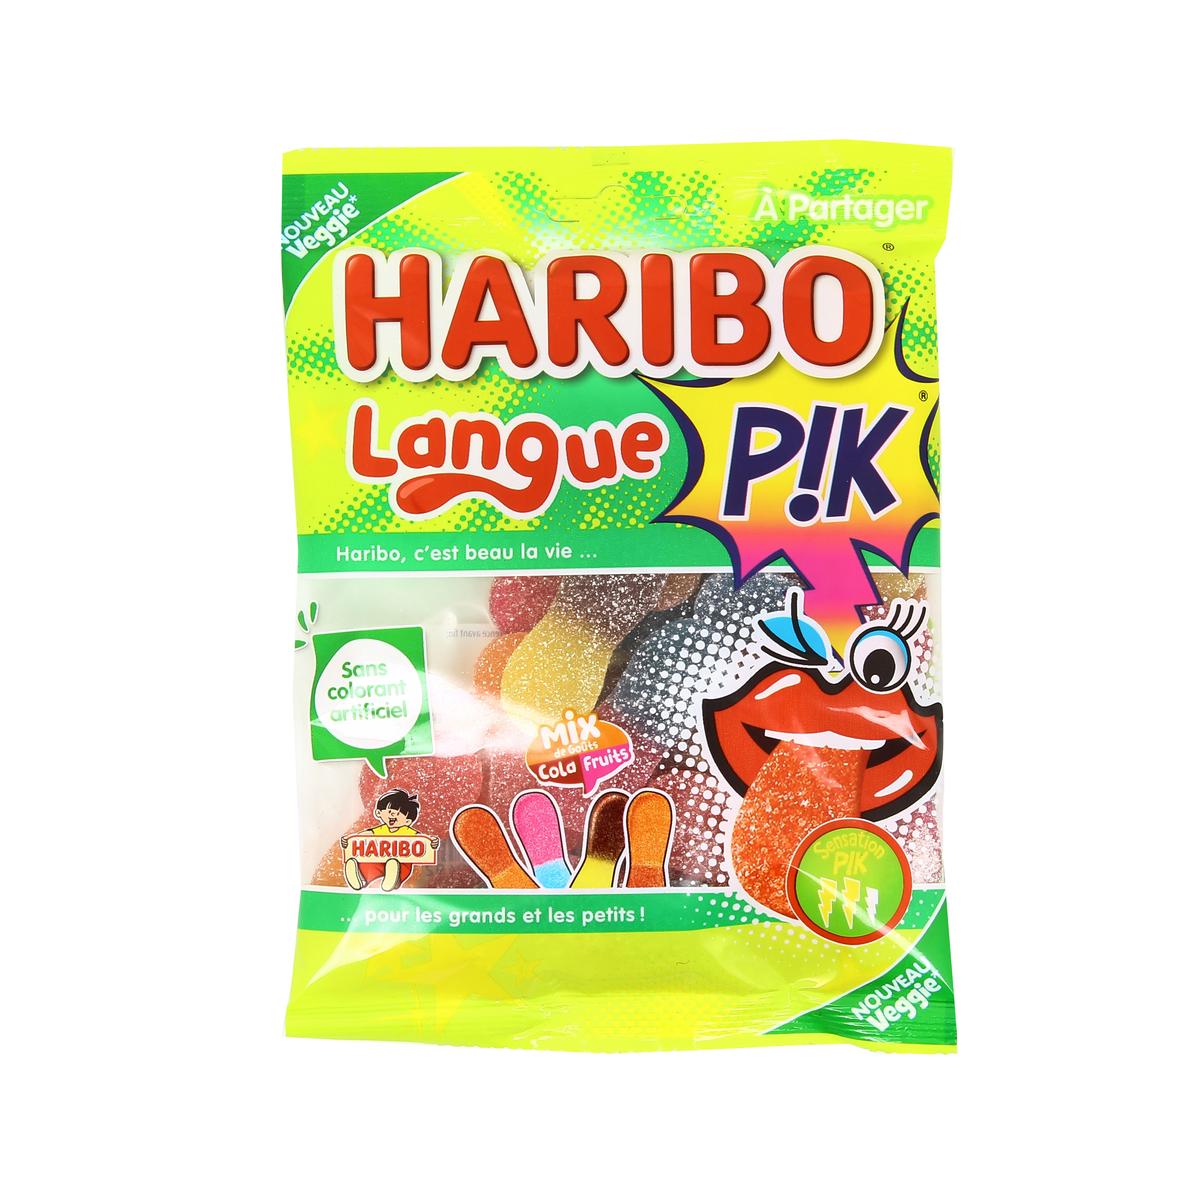 Haribo langue Pik!